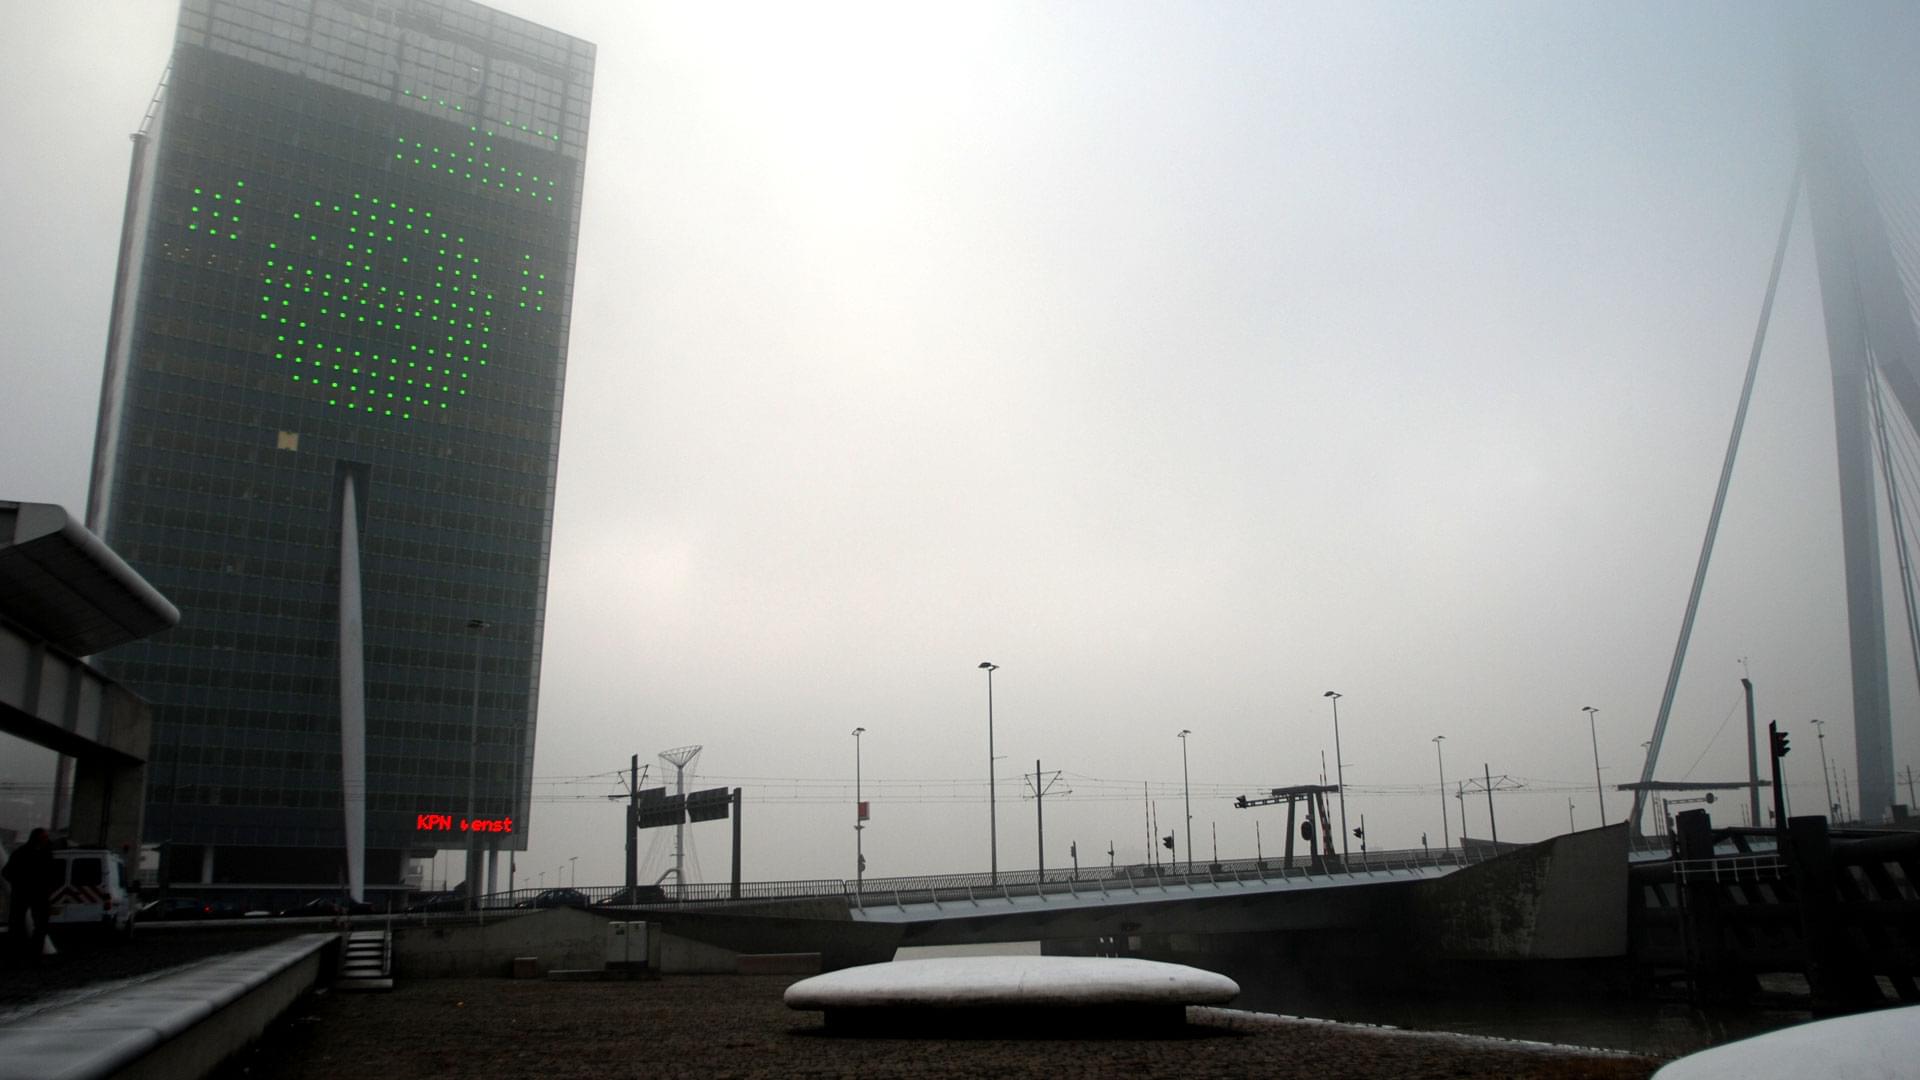 Kop van Zuid - Rotterdam, KPN, tegen de gevel zijn 22x40 lampen gepositioneerd. Deze lichten zijn via software aan te stur...